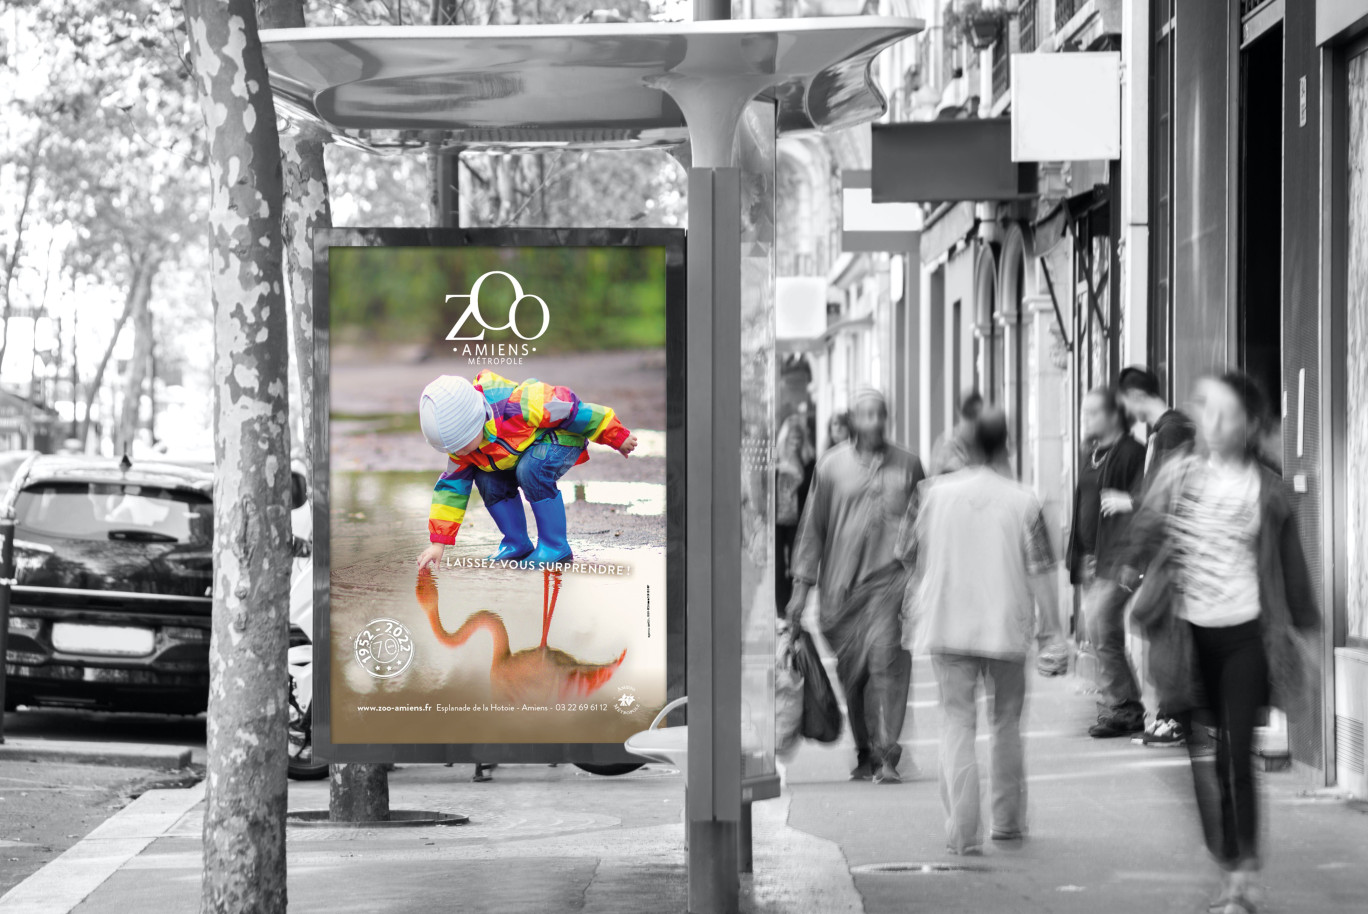 Une affiche réalisée pour le zoo d’Amiens, dans le cadre de sa campagne de communication. (c)Avril